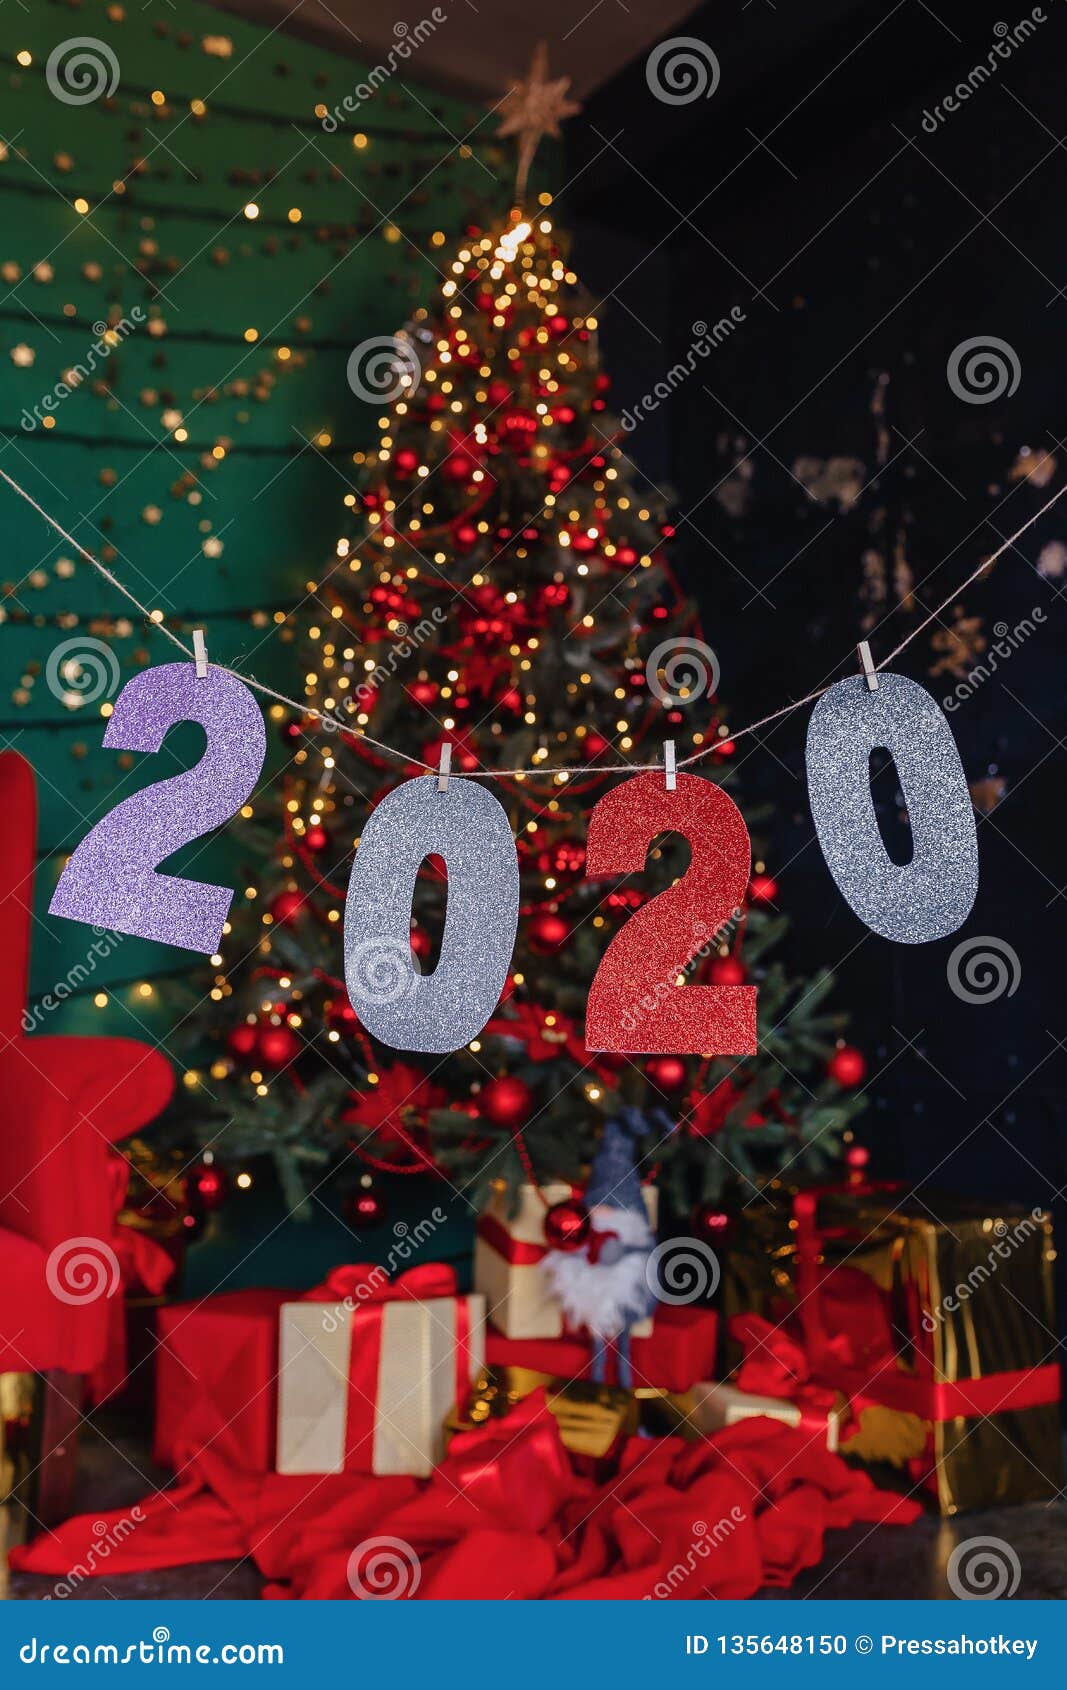 Albero Di Natale 2020.Partito Del Nuovo Anno Di 2020 Numeri Albero Di Natale Fotografia Stock Immagine Di Colorato Festa 135648150